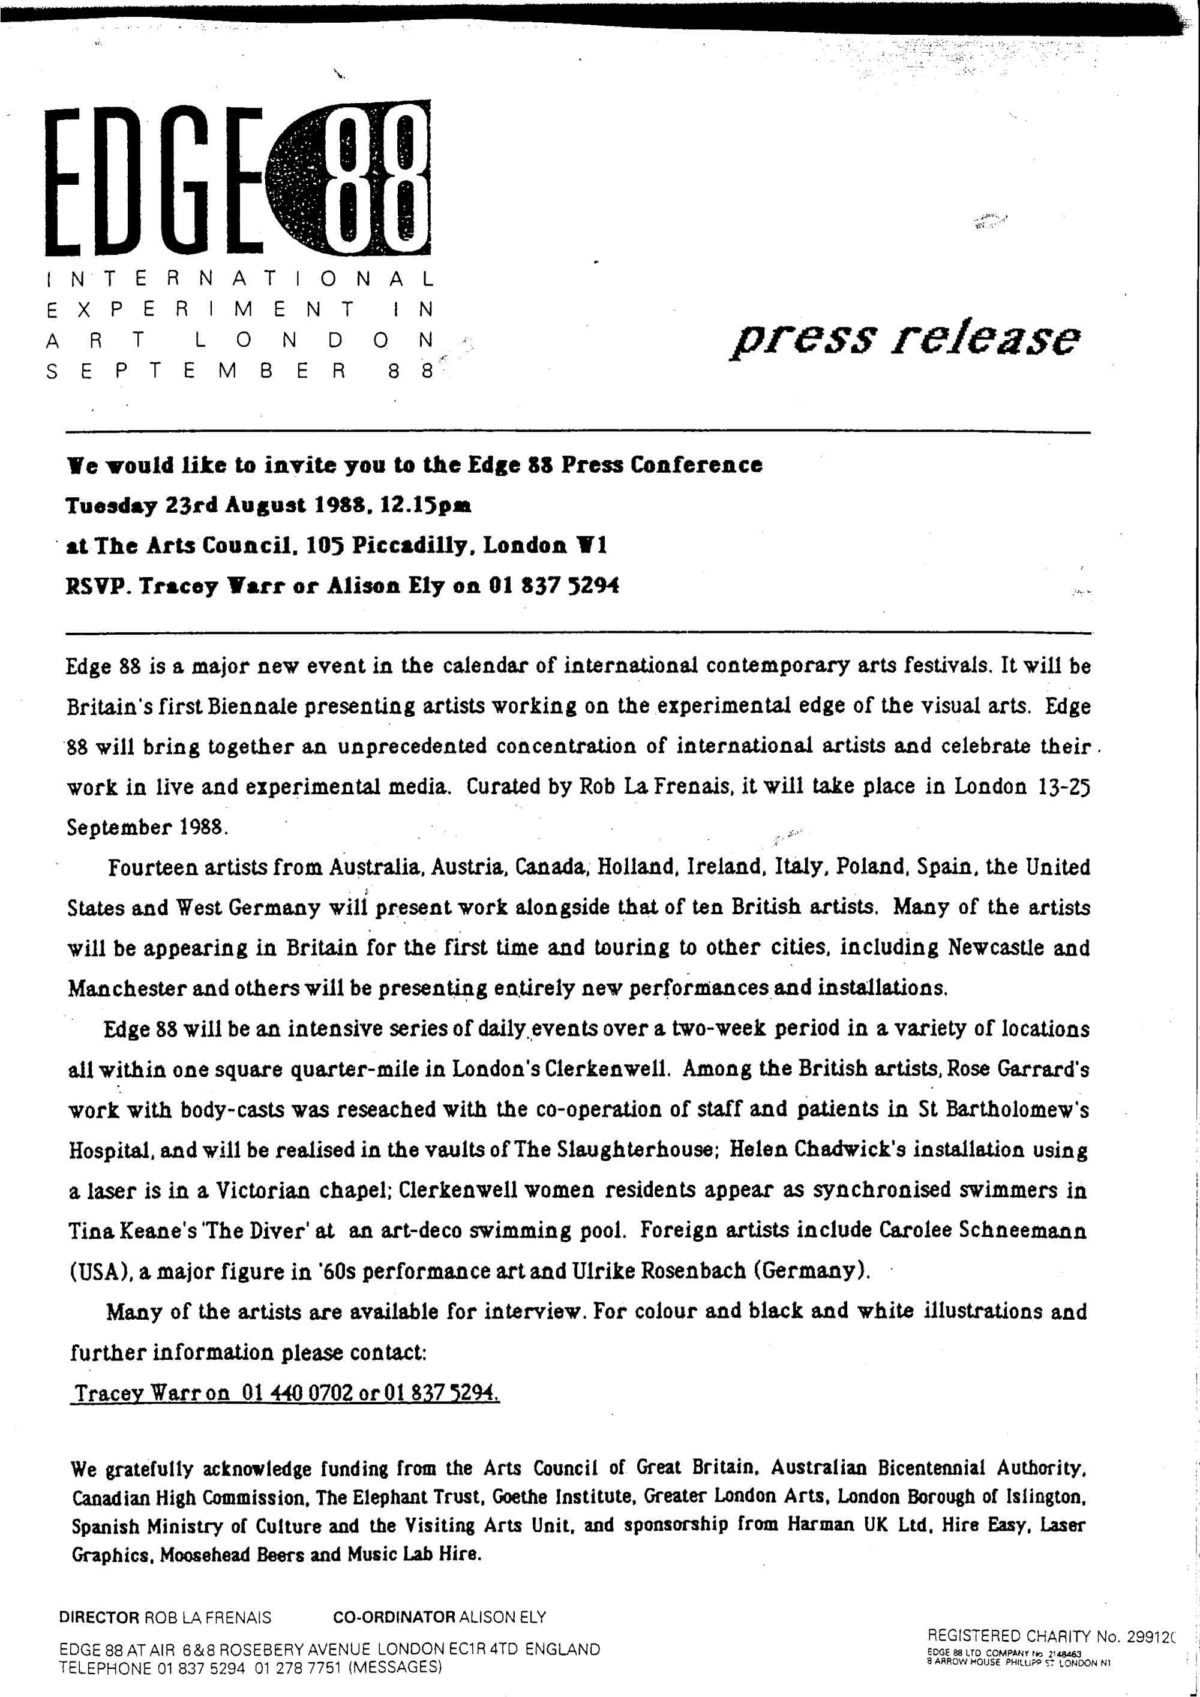 Press Release Invitation to Press Conference, 1988